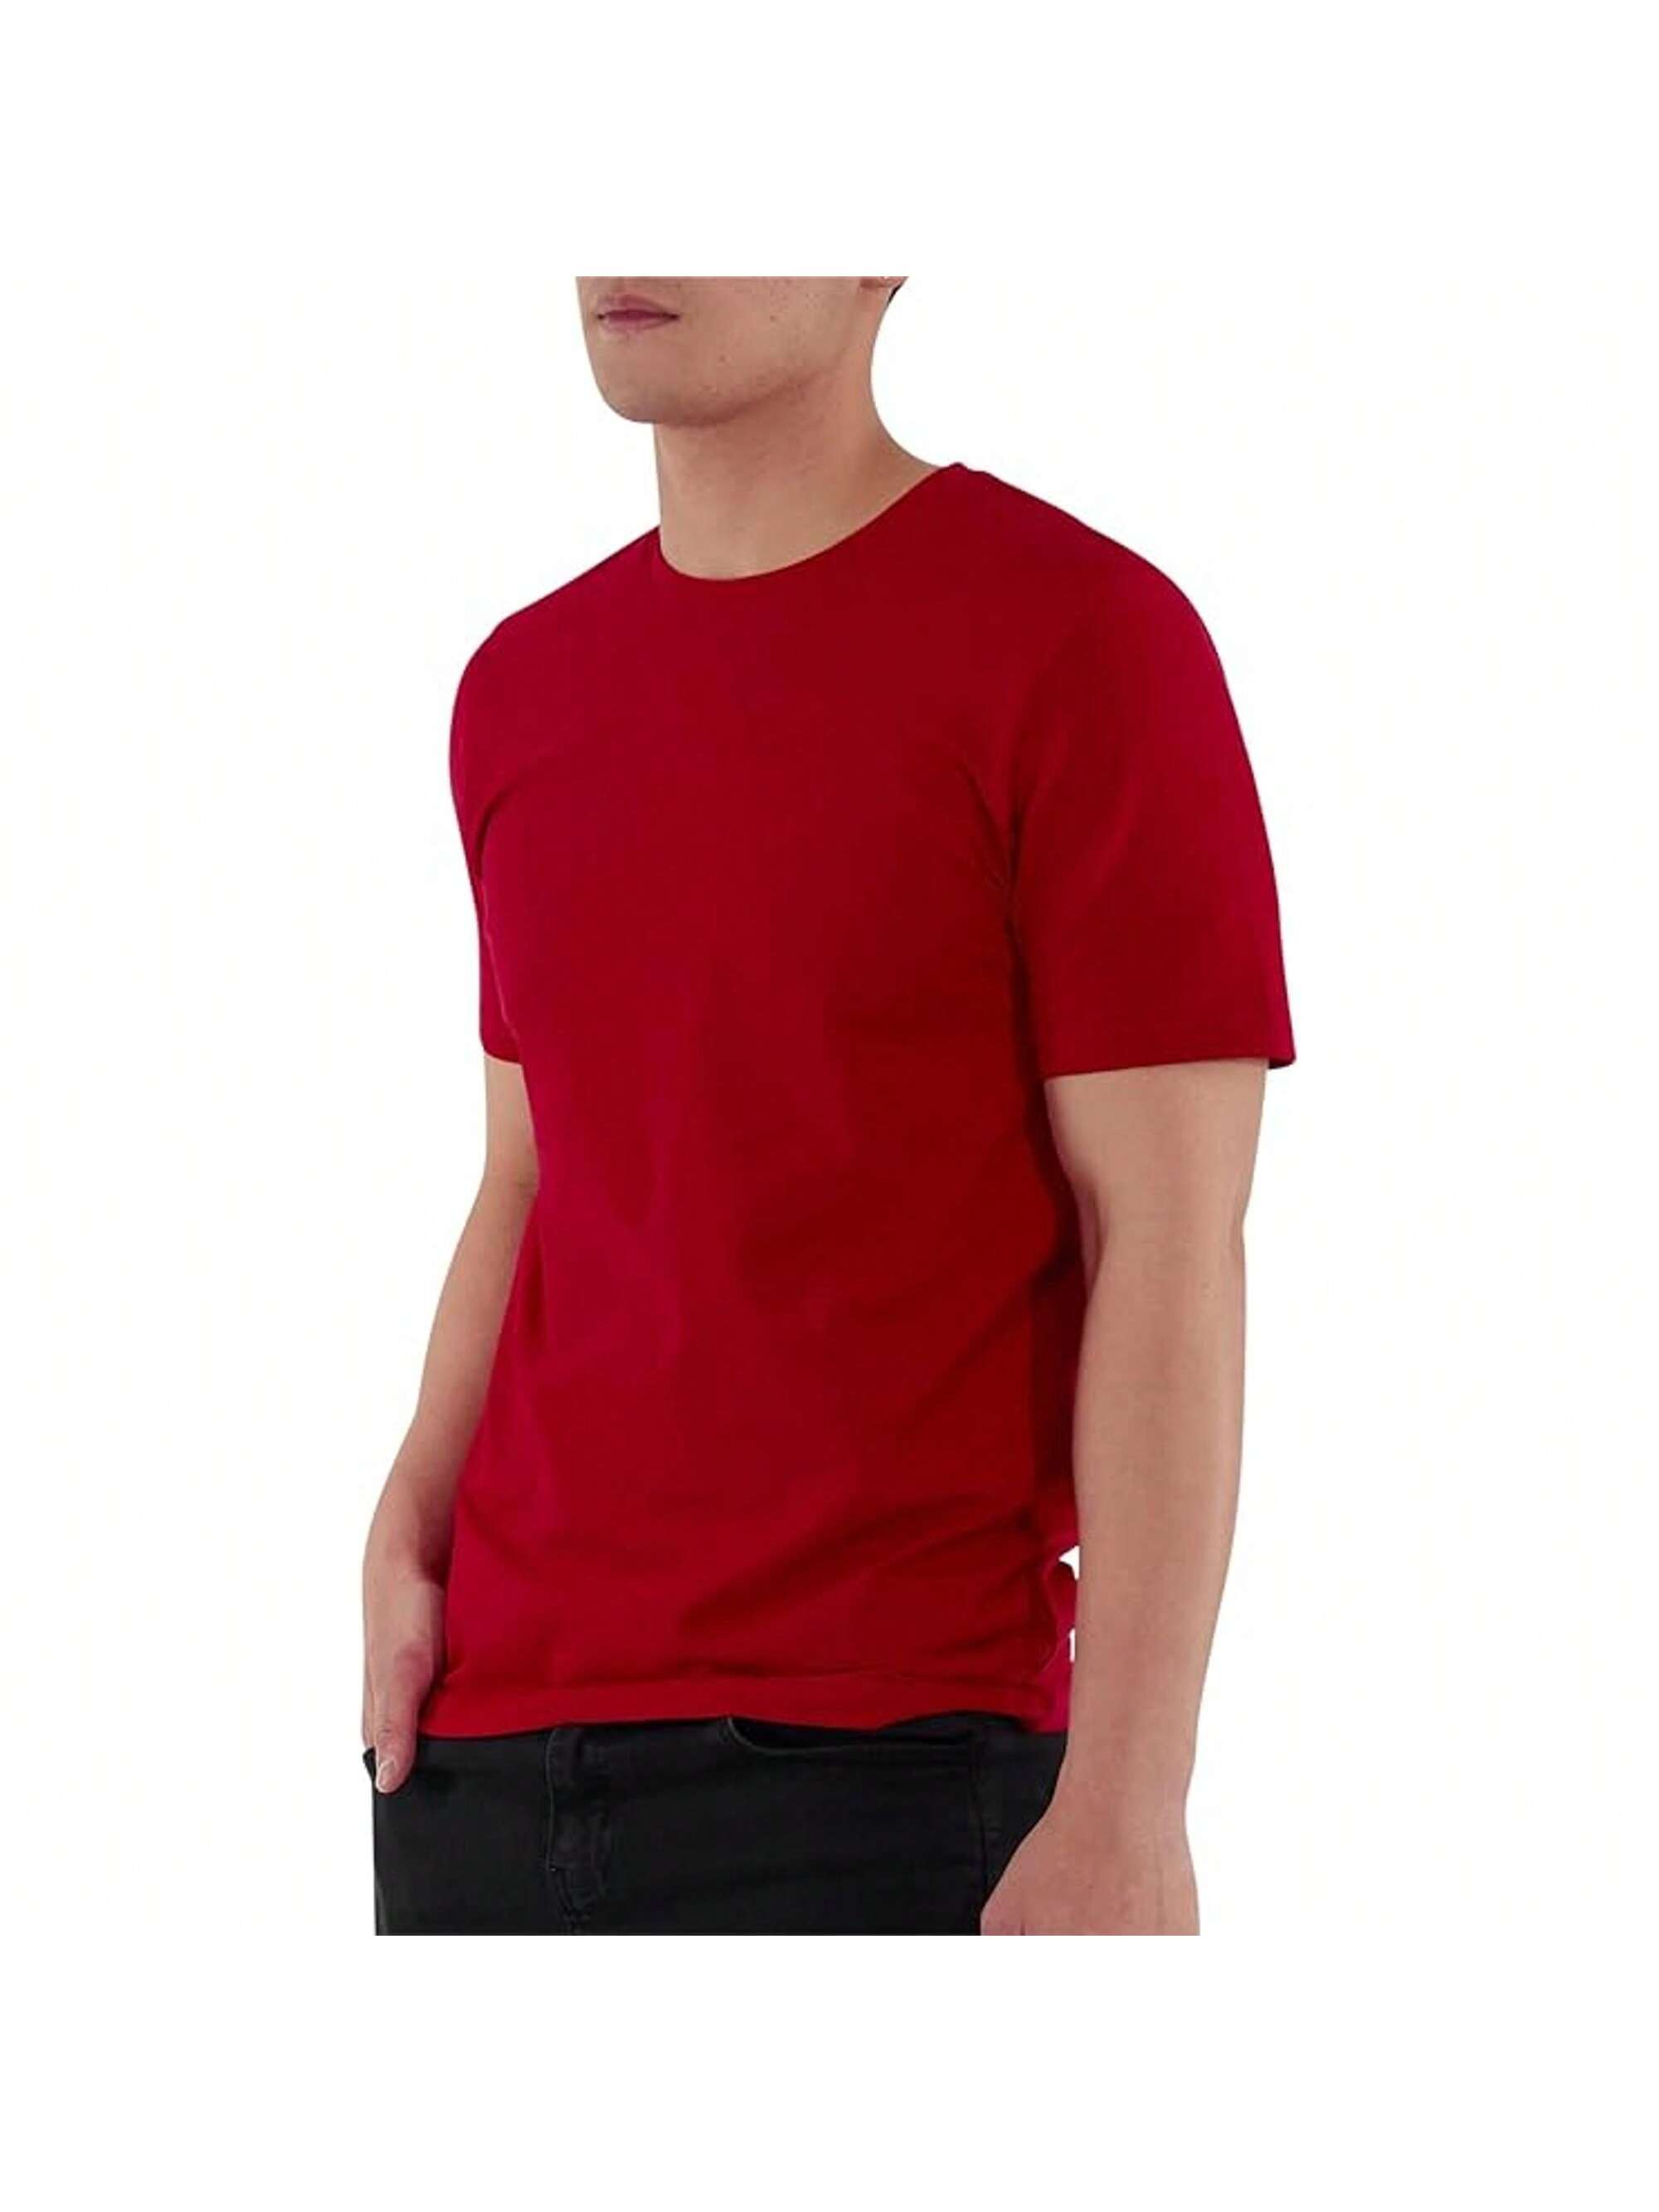 Мужская хлопковая футболка премиум-класса с круглым вырезом Rich Cotton� NVY-M, красный футболка laredoute футболка с круглым вырезом shark m черный